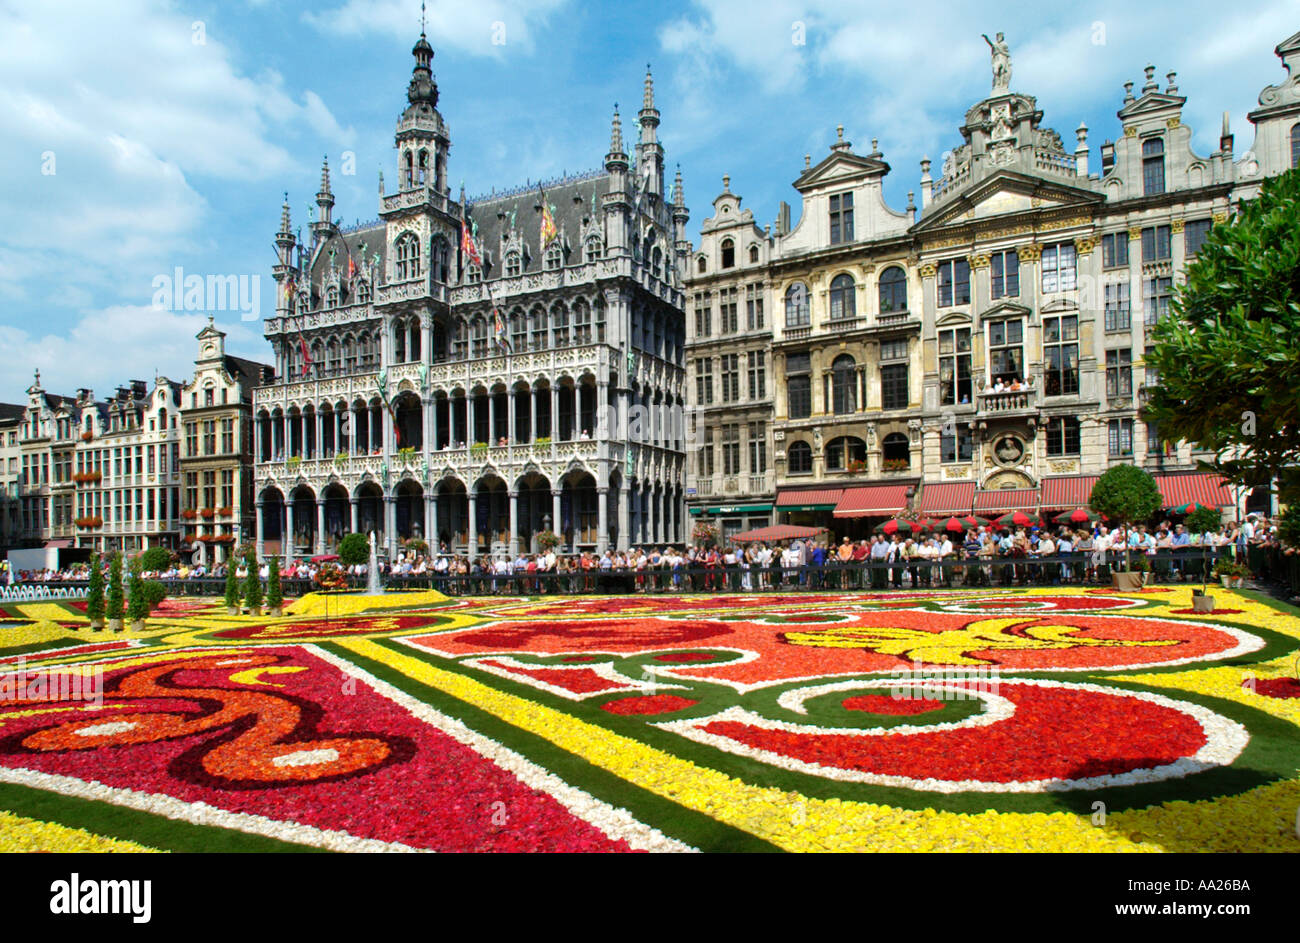 Tapis de fleurs à la Grand Place (place principale), Bruxelles, Belgique Banque D'Images